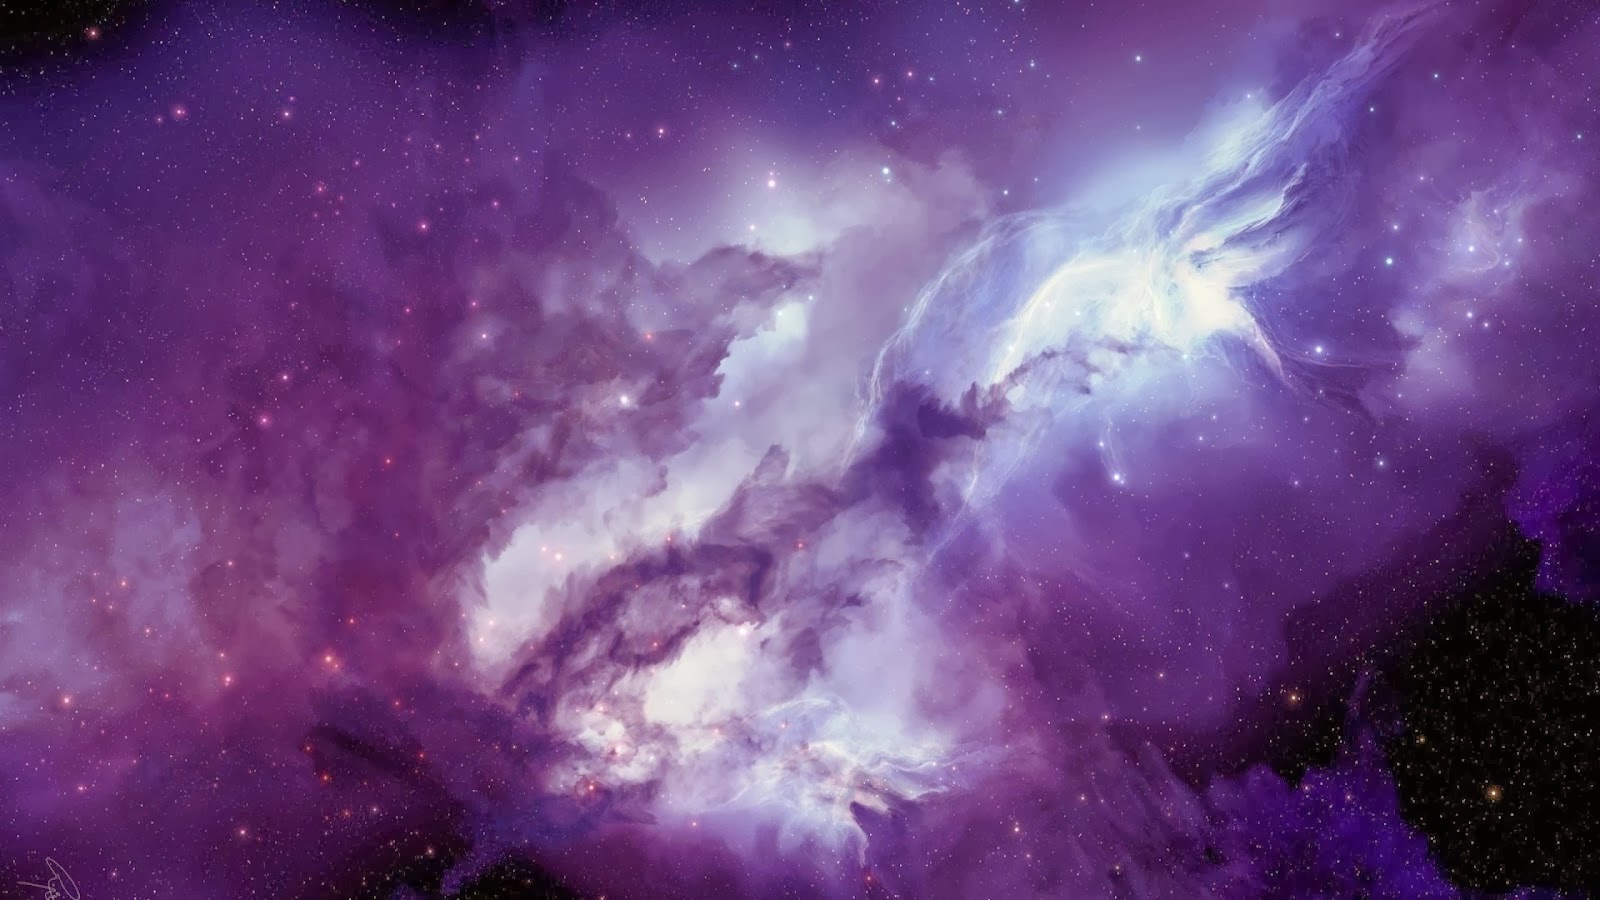 Way Galaxy HD Wallpaper 1080p Space Milky